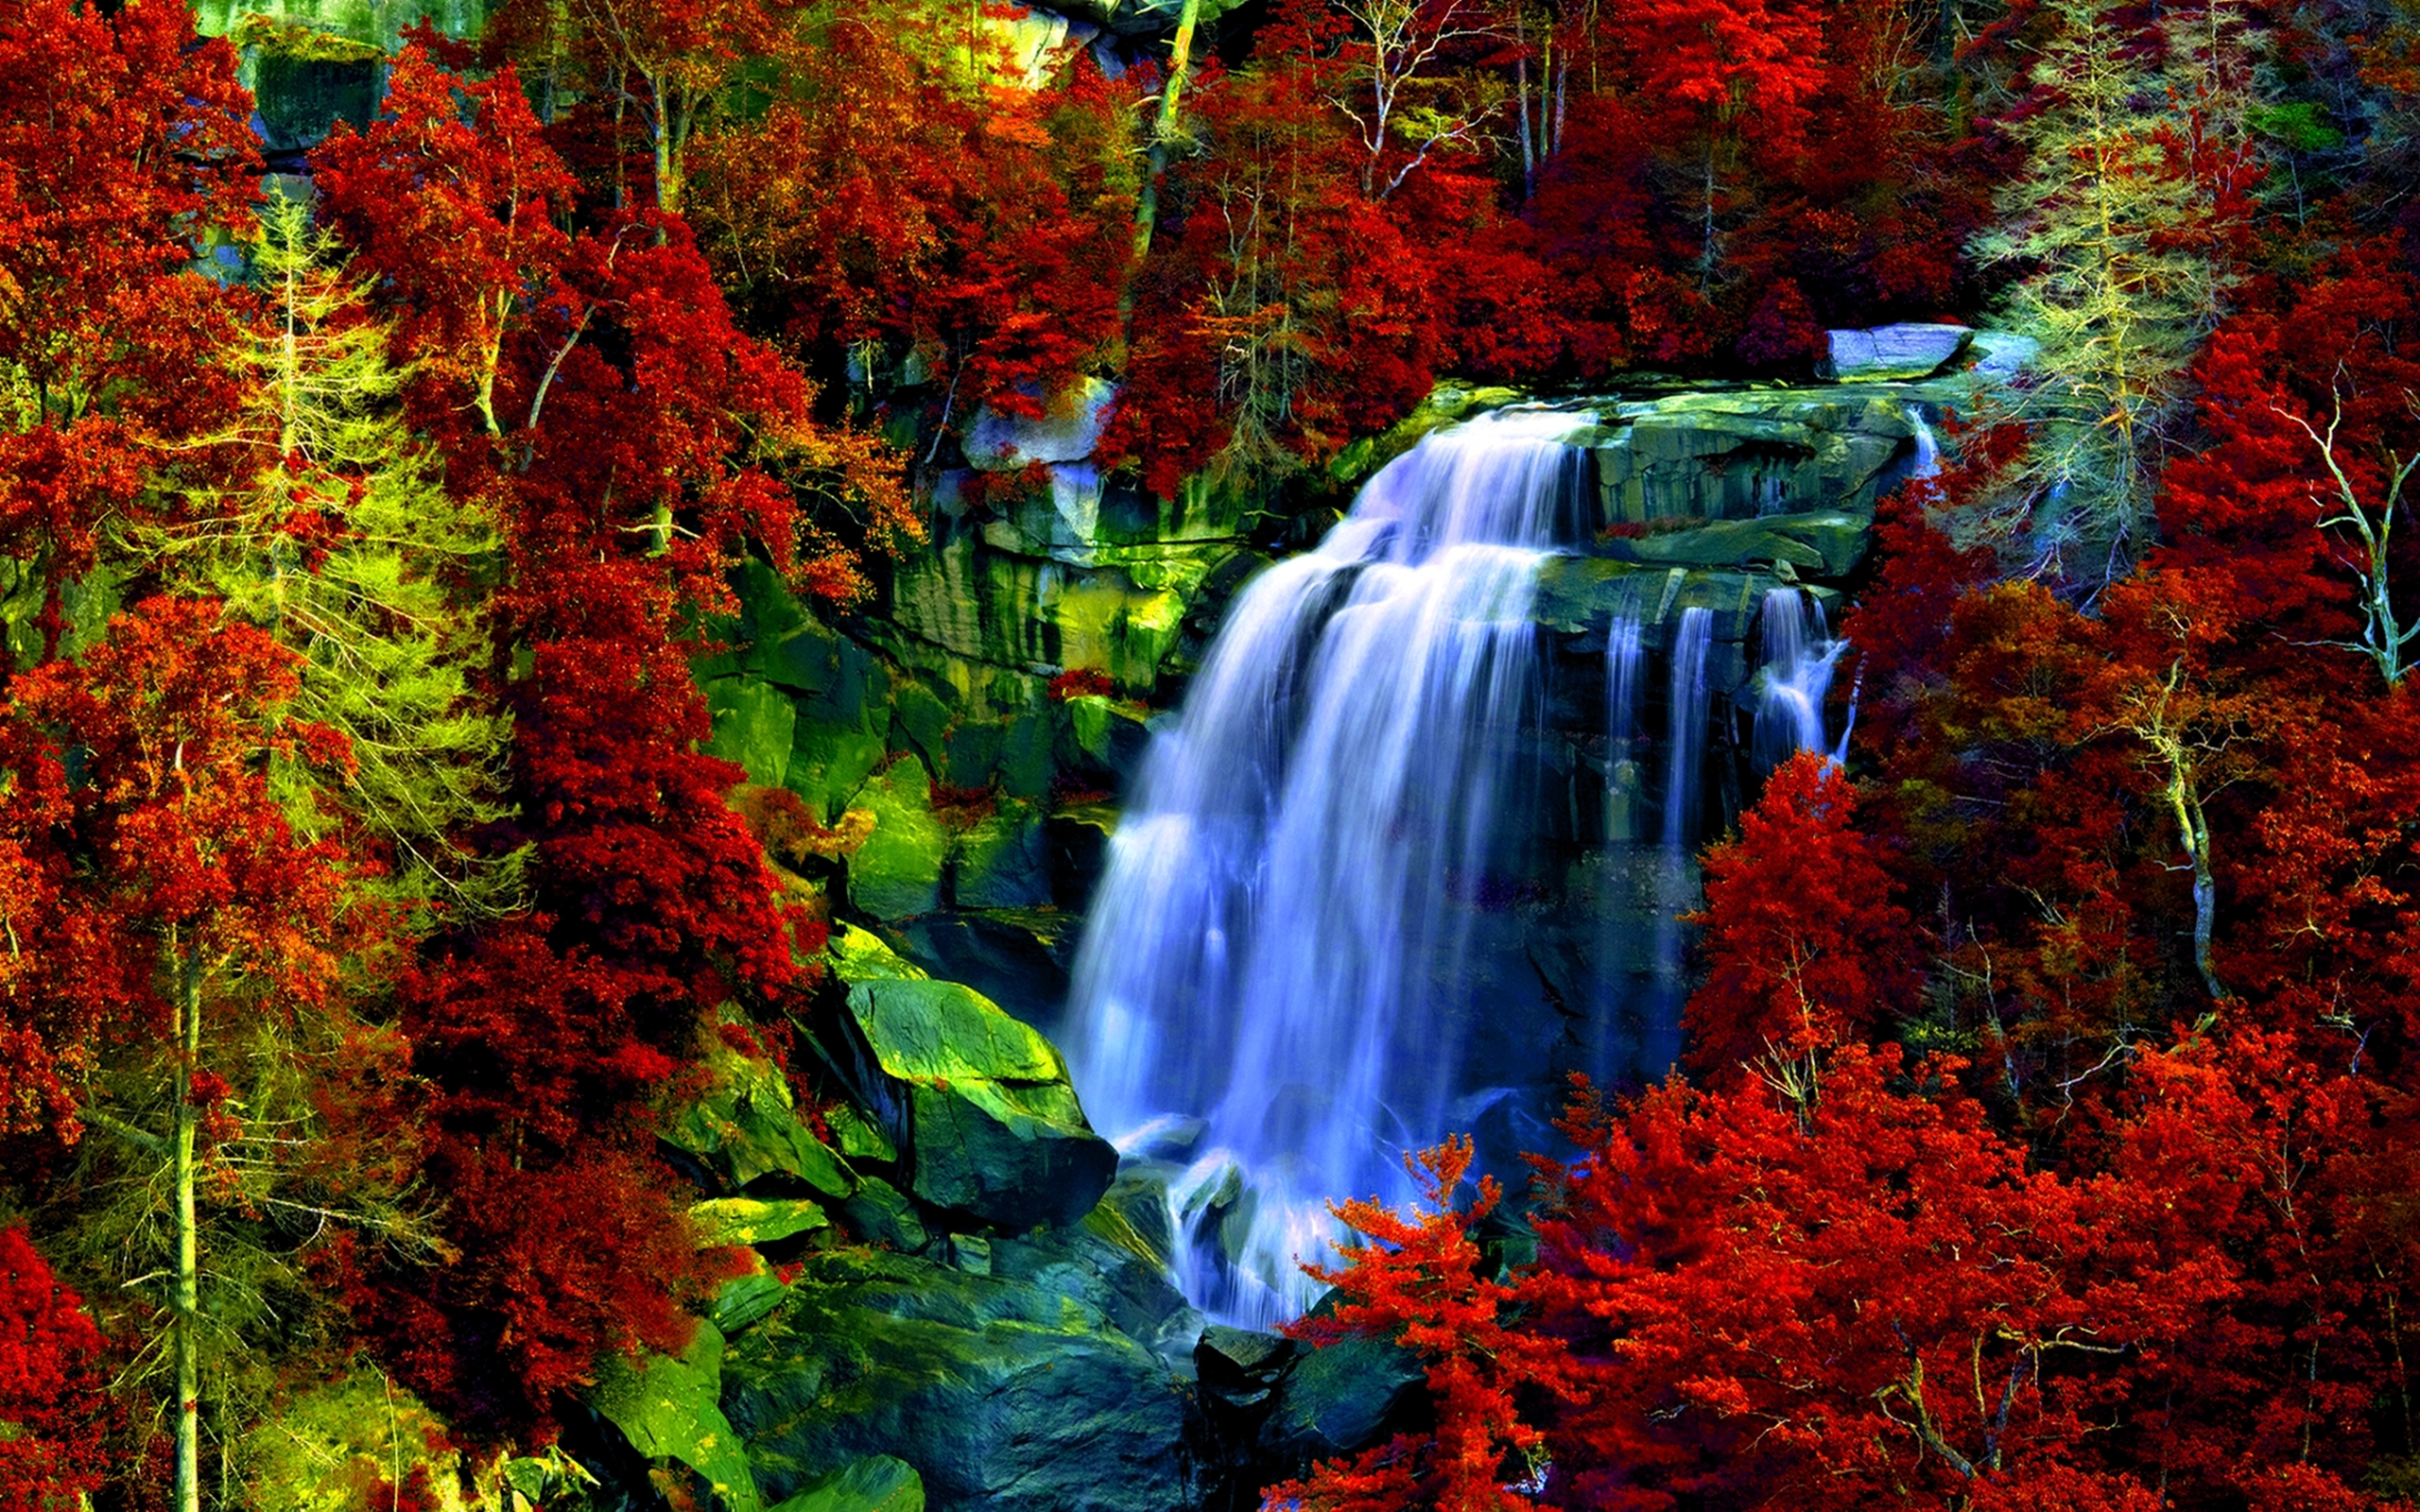 Обои на телефон самые красивые в мире. Табиат манзараси. Природа. Красивые водопады. Живая природа водопады.